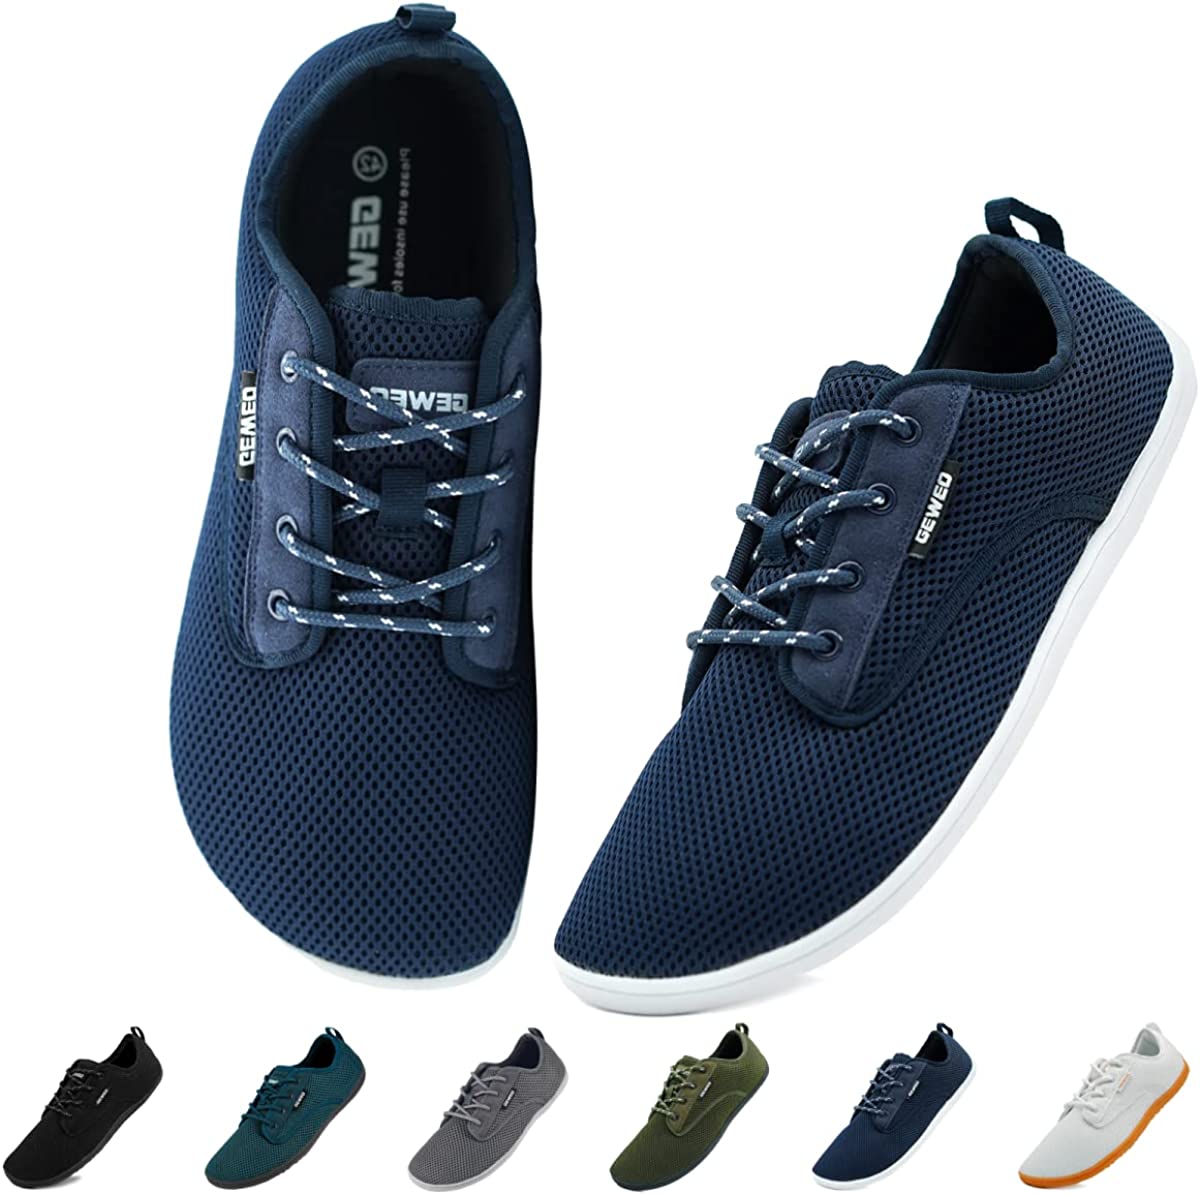 Geweo Unisex Minimalist Barefoot Shoes, Extra Wide Toe Box